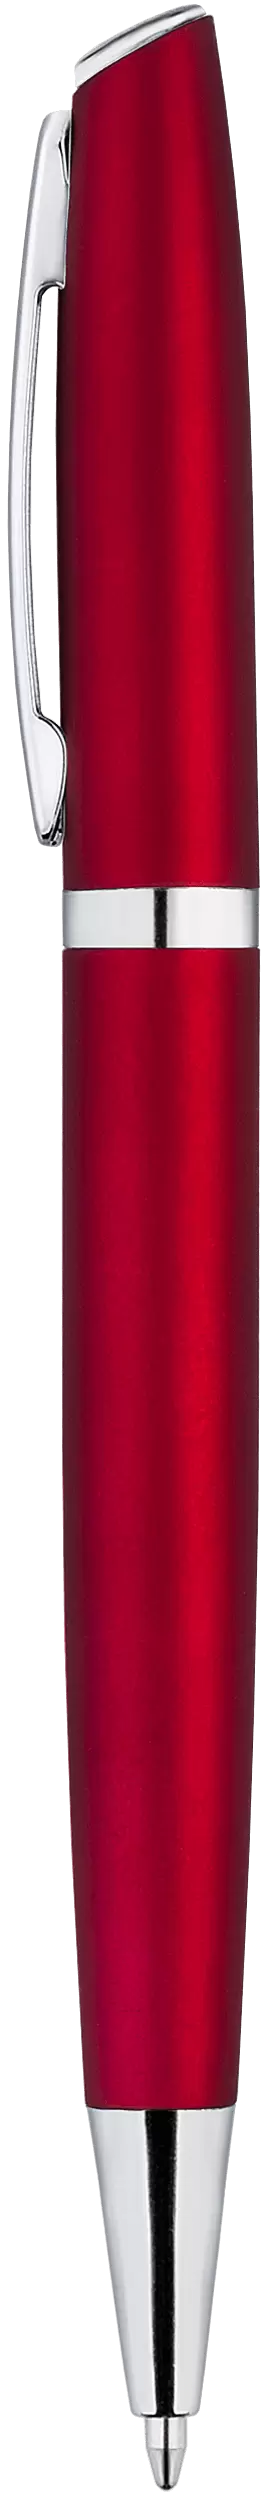 Ручка VESTA SOFT Темно-красная 1121-25